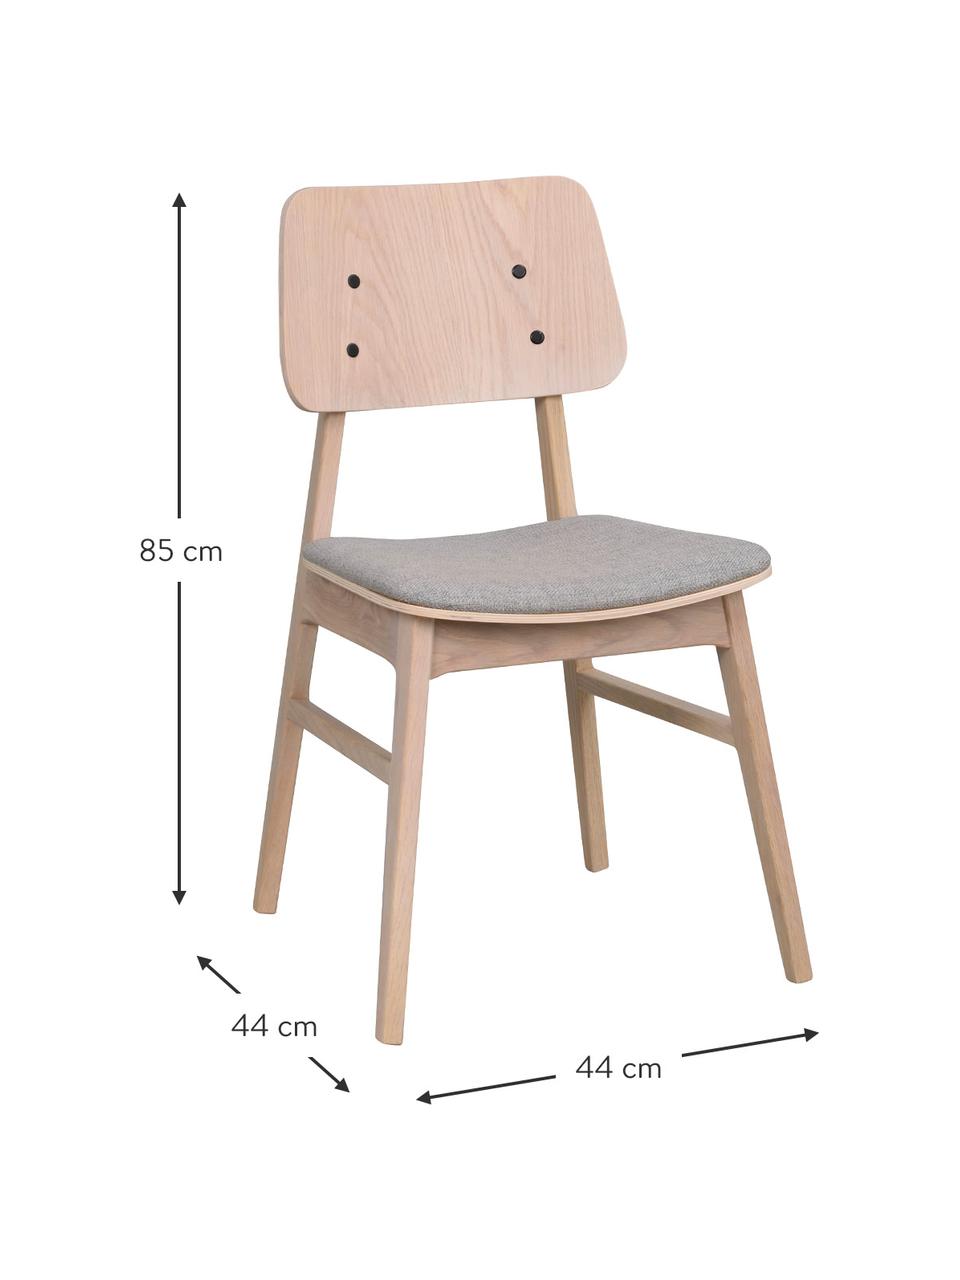 Holzstühle Nagano mit gepolsterter Sitzfläche, 2 Stück, Bezug: 100 % Polyester Der hochw, Beige, Hellgrau, B 50 x T 51 cm